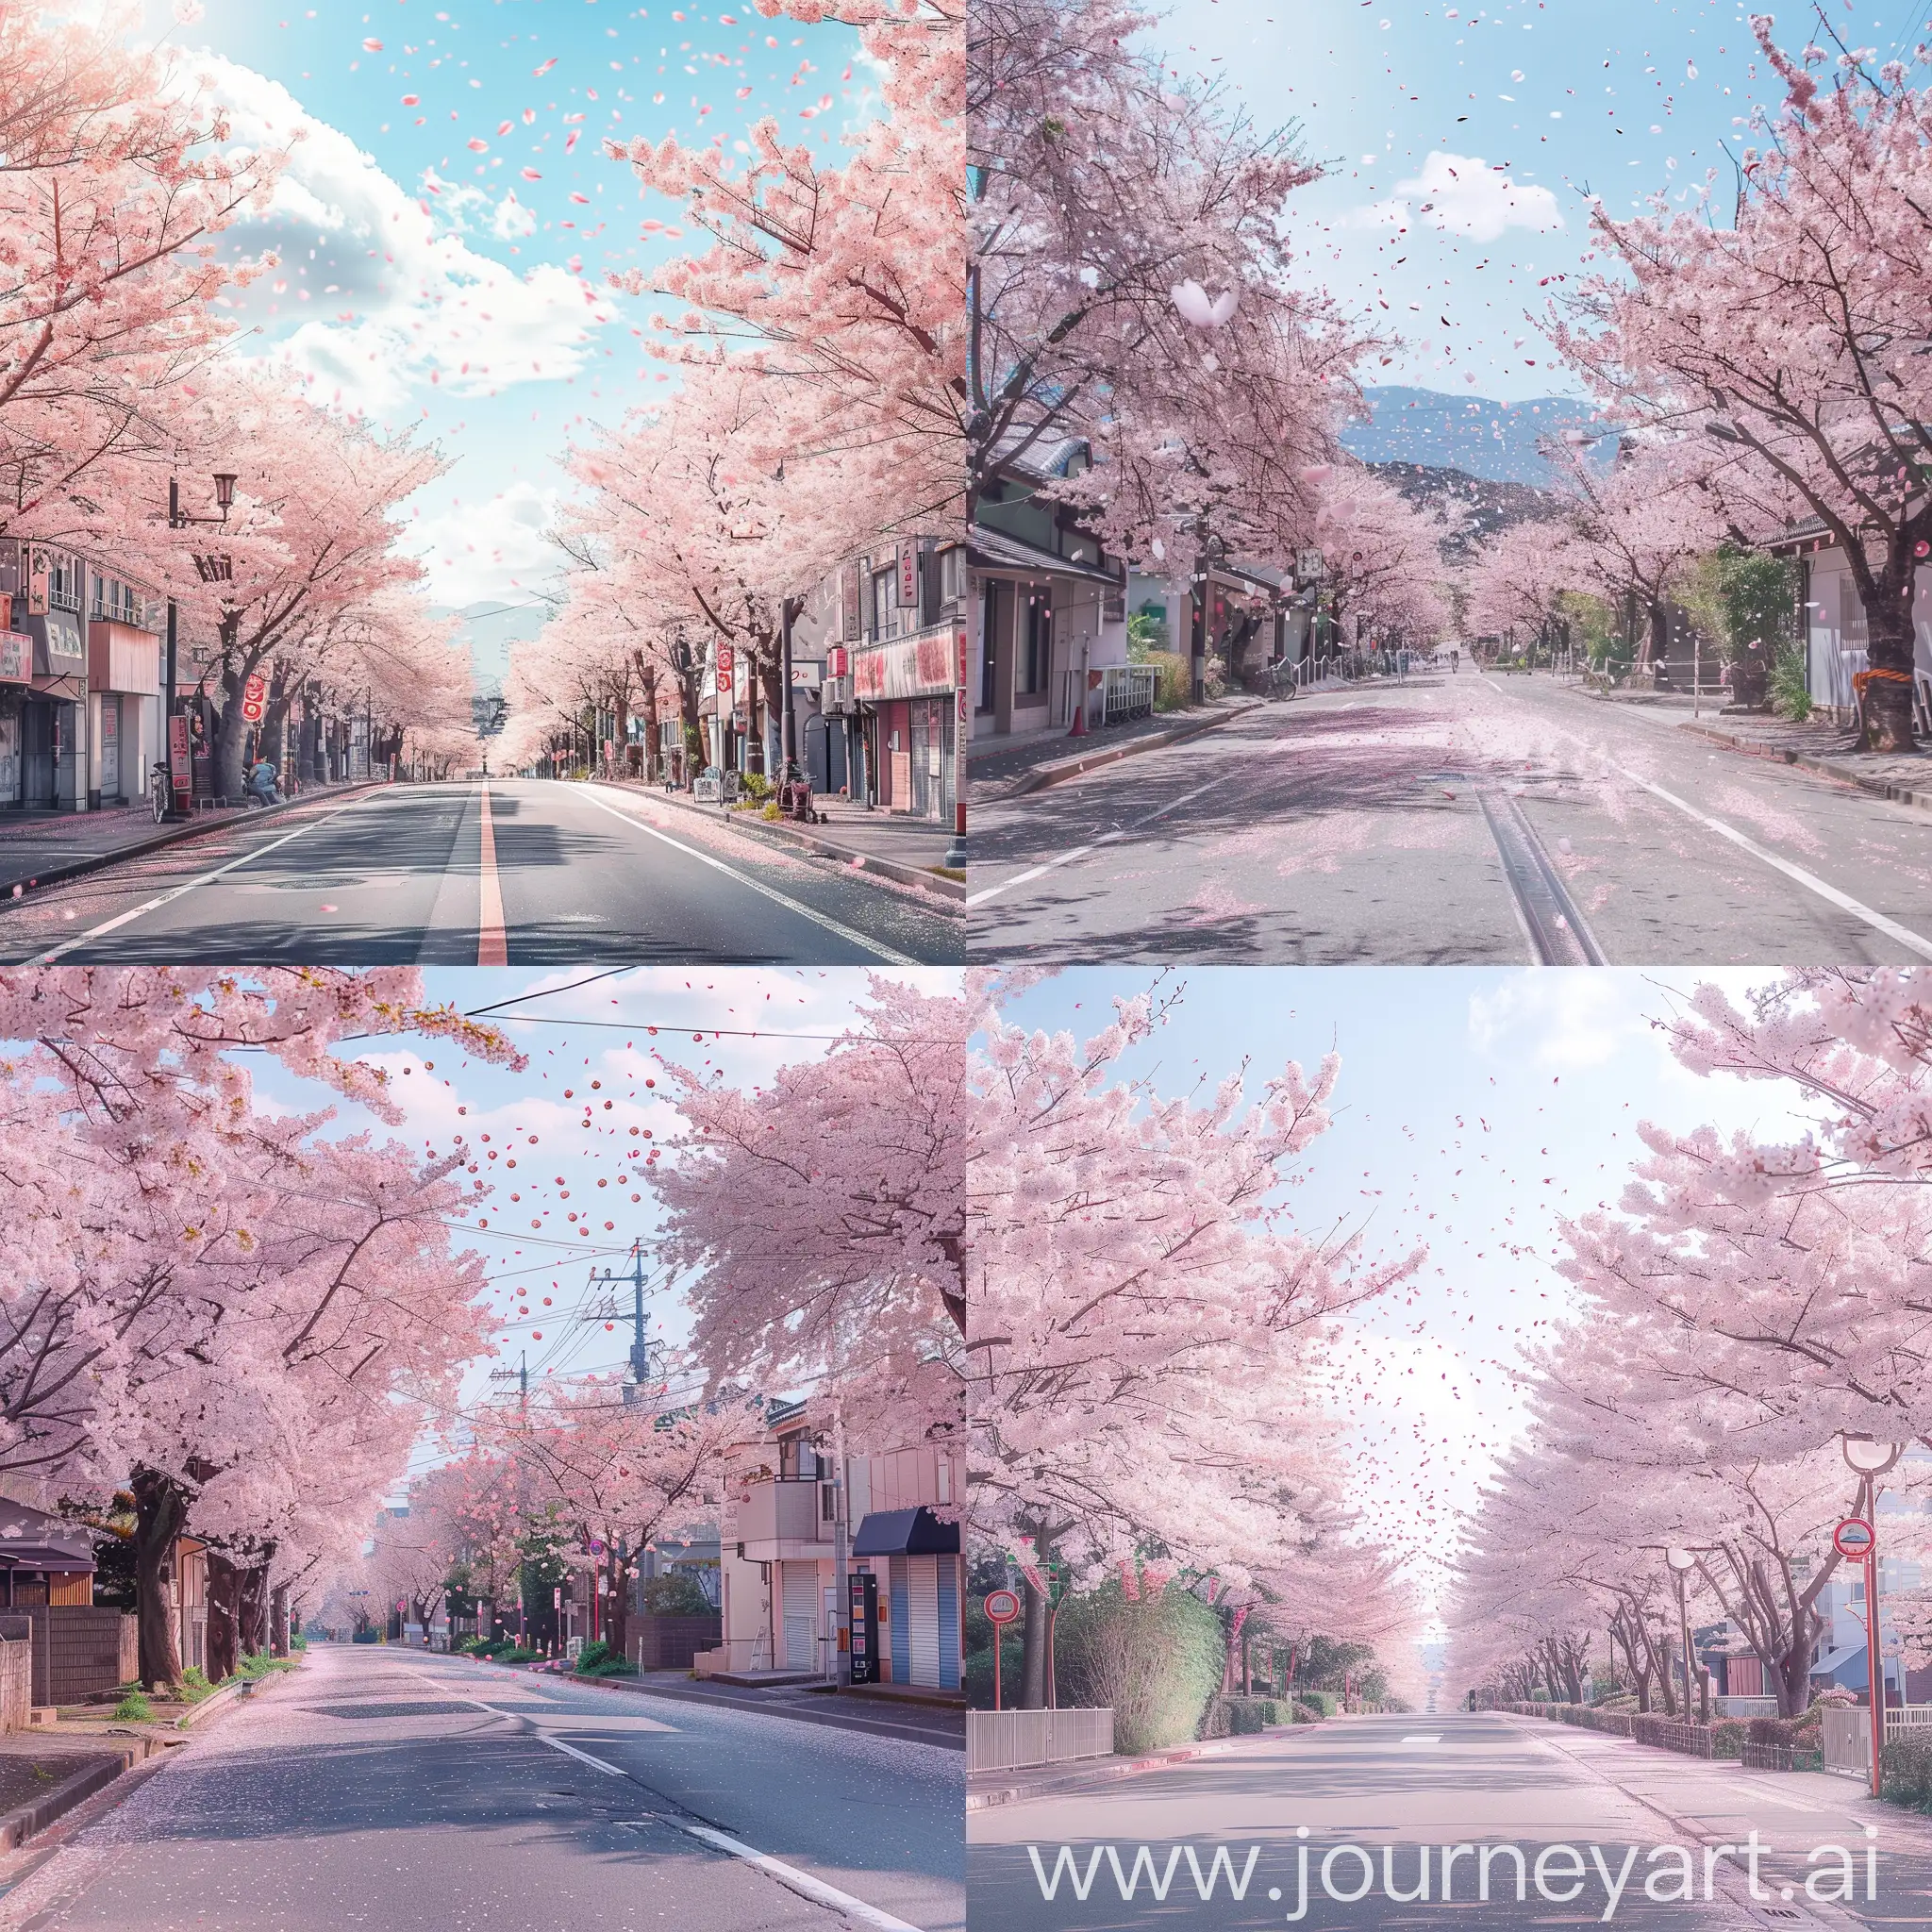 Una calle lleno de árboles de Sakura y sakuras volando